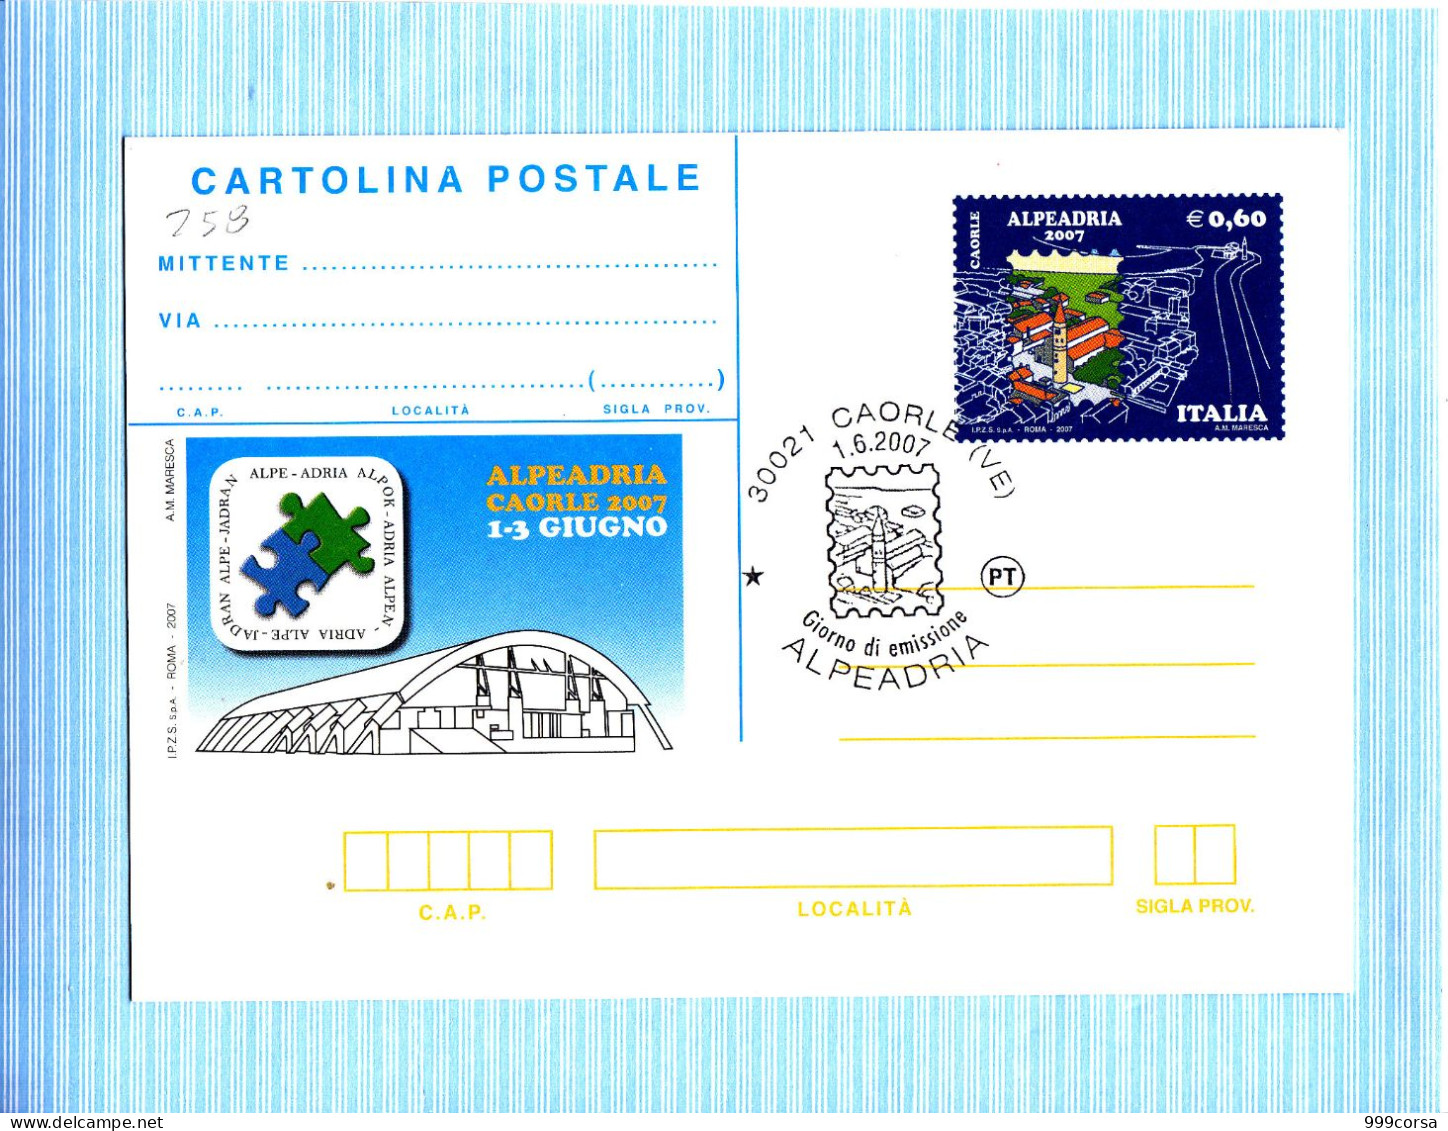 Italia, Filatelia, Cartolina Postale Alpe Adria 2007 Caorle (VE), Annullo 1° Giorno Caorle 1-6-2007 - Philatelic Exhibitions